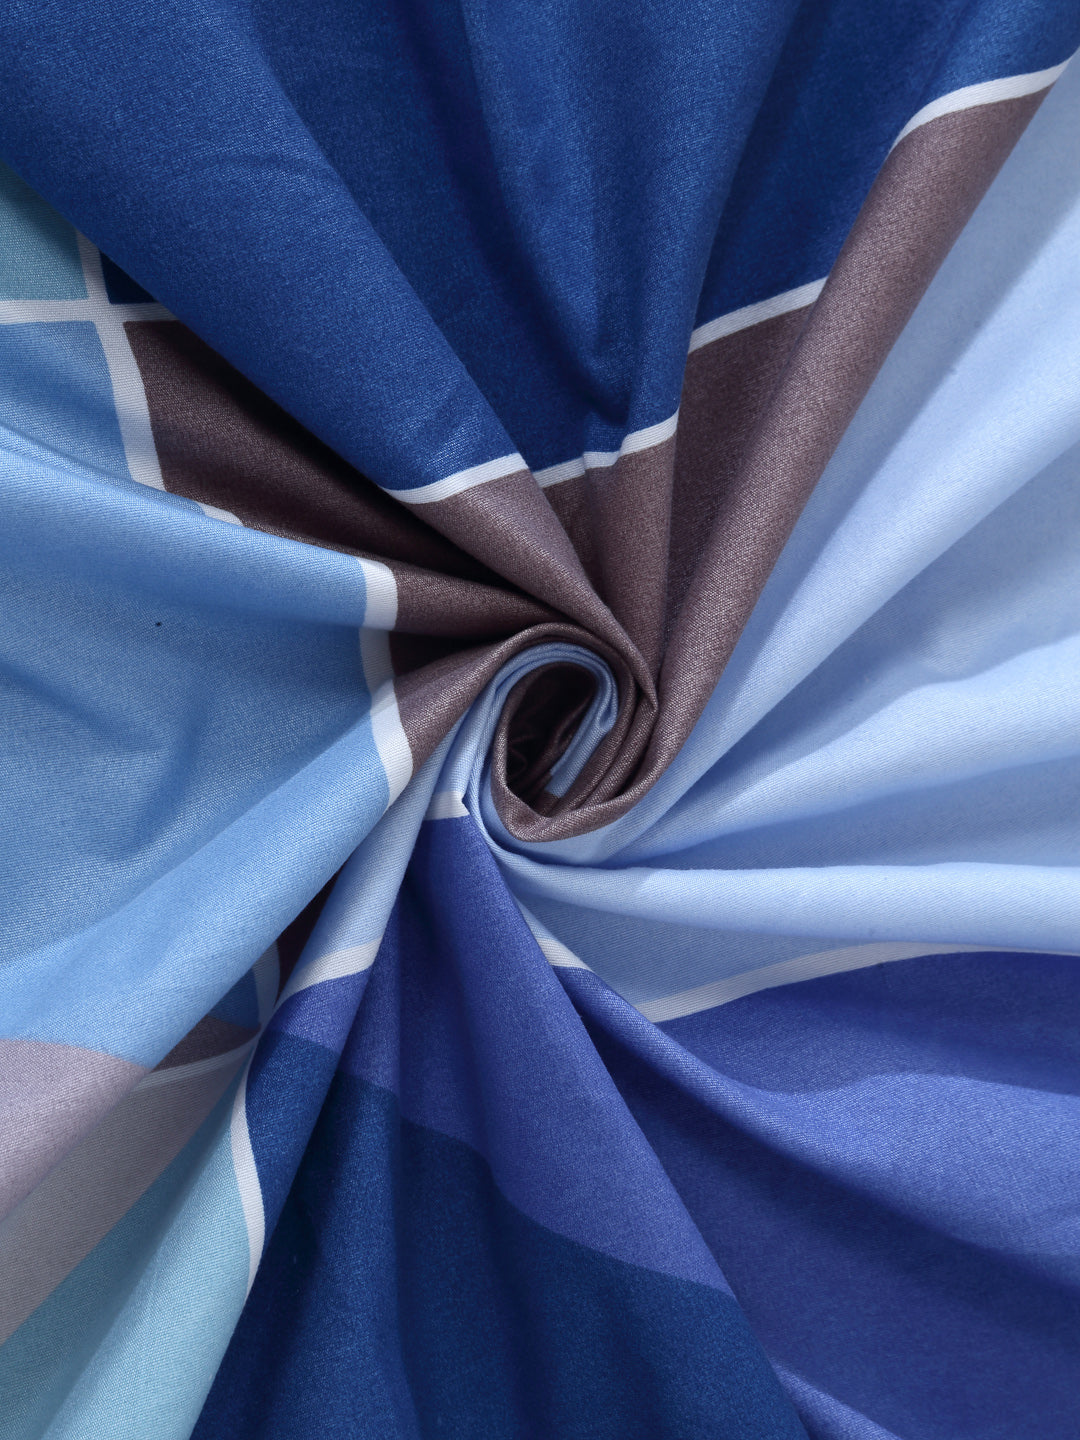 Arrabi Blue Geometric TC Cotton Blend Single Size Bedsheet with 1 Pillow Cover (215 x 150 cm)